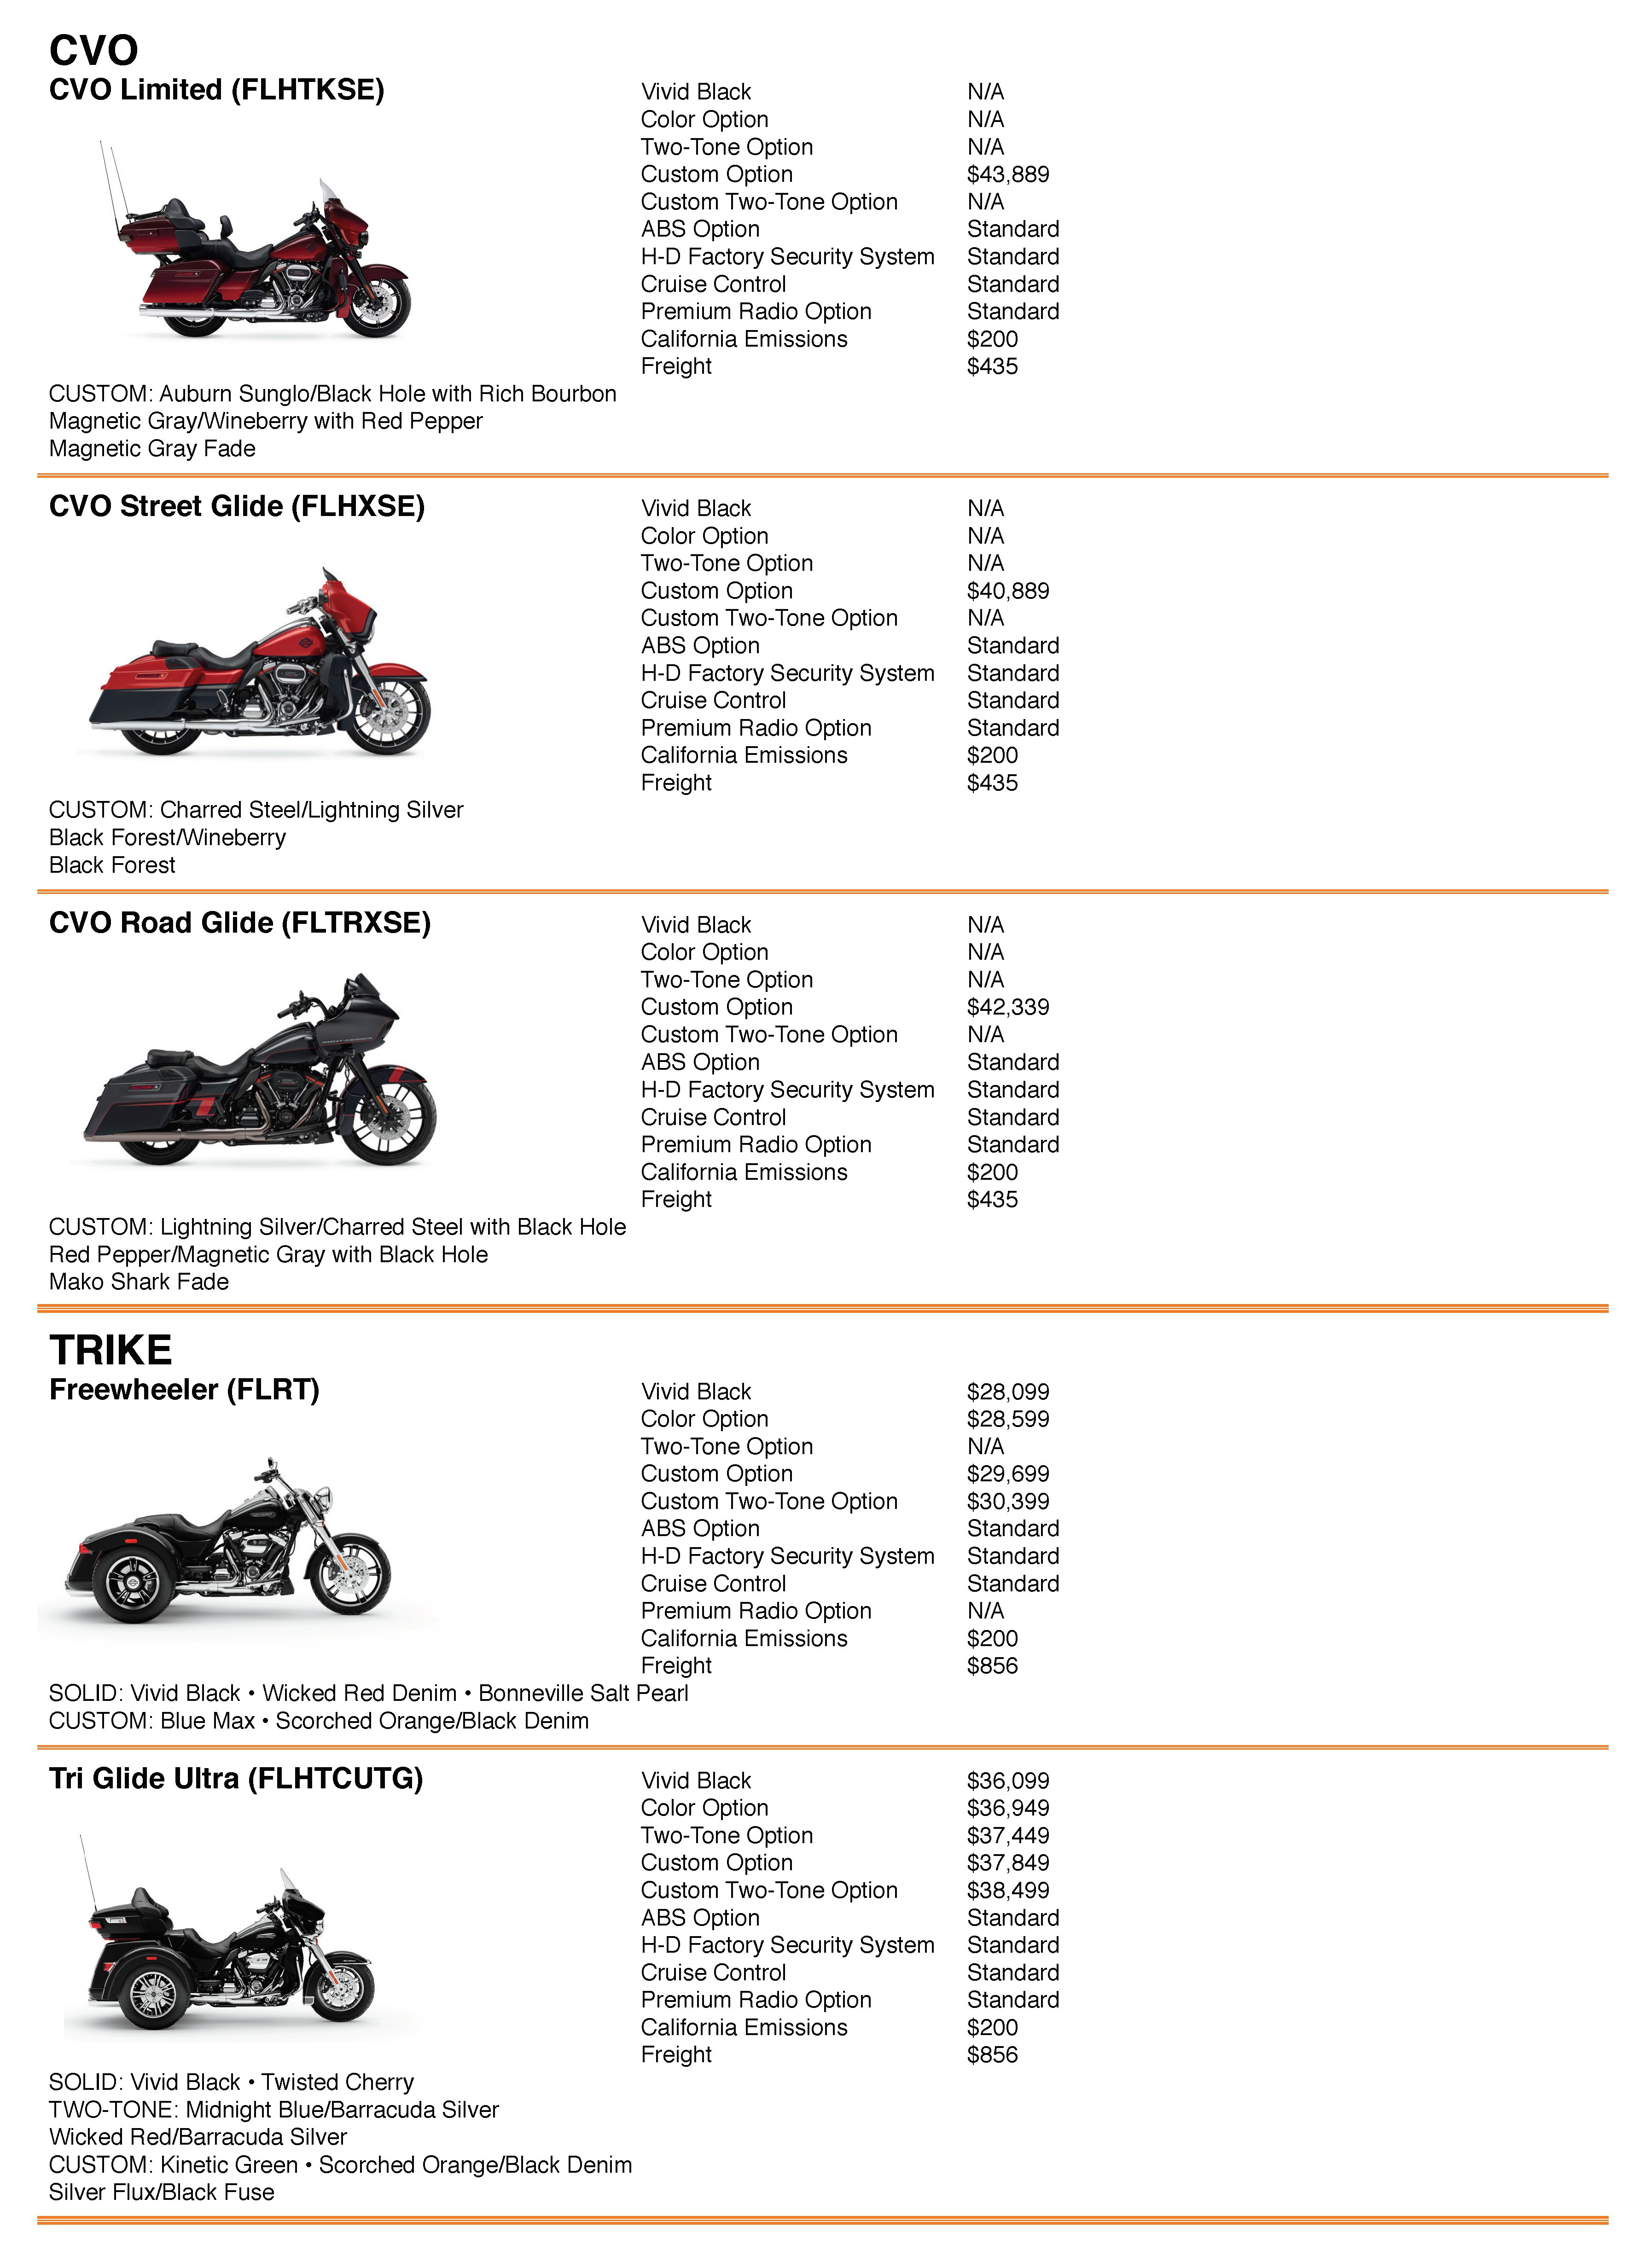 2005 Harley Davidson Color Chart